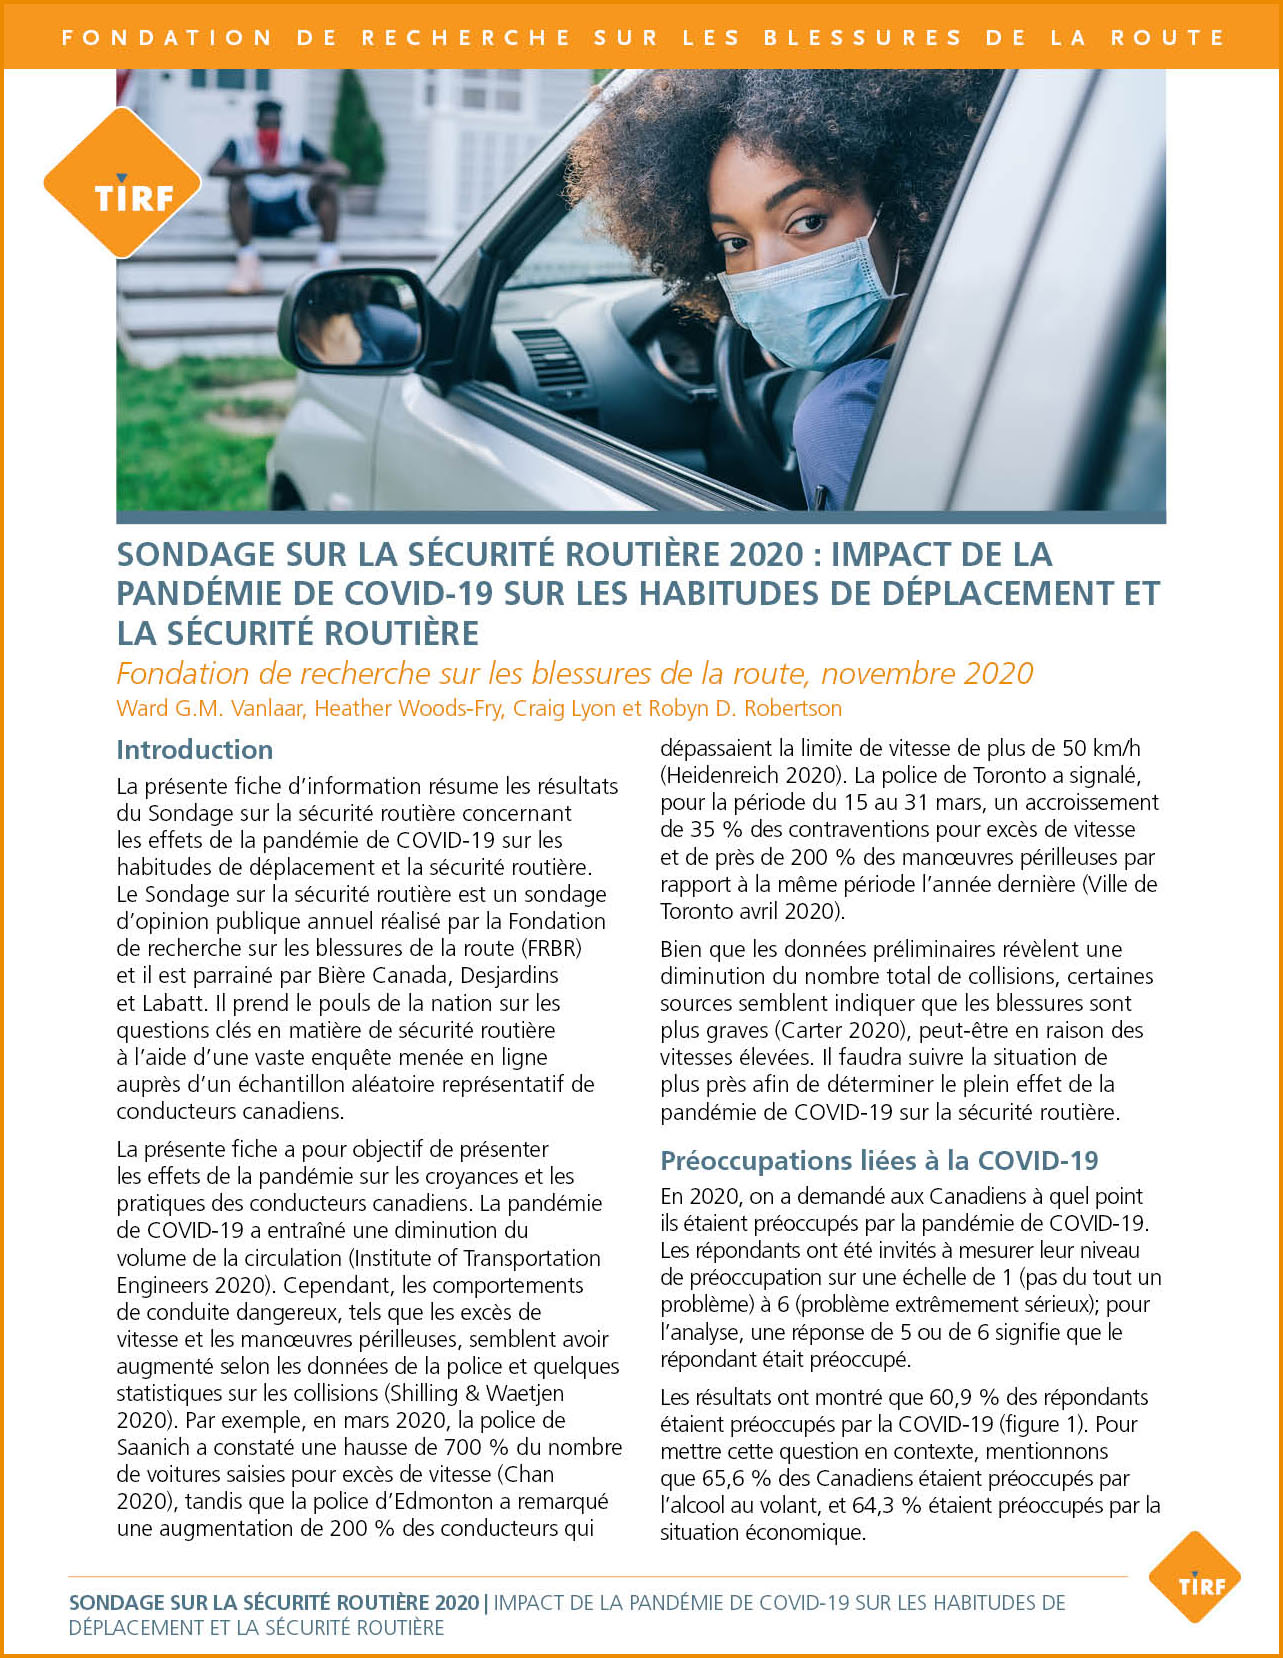 Sondage sur la sécurité routière 2020 : L'impact de la pandémie COVID-19 sur les habitudes de déplacement et la sécurité routière